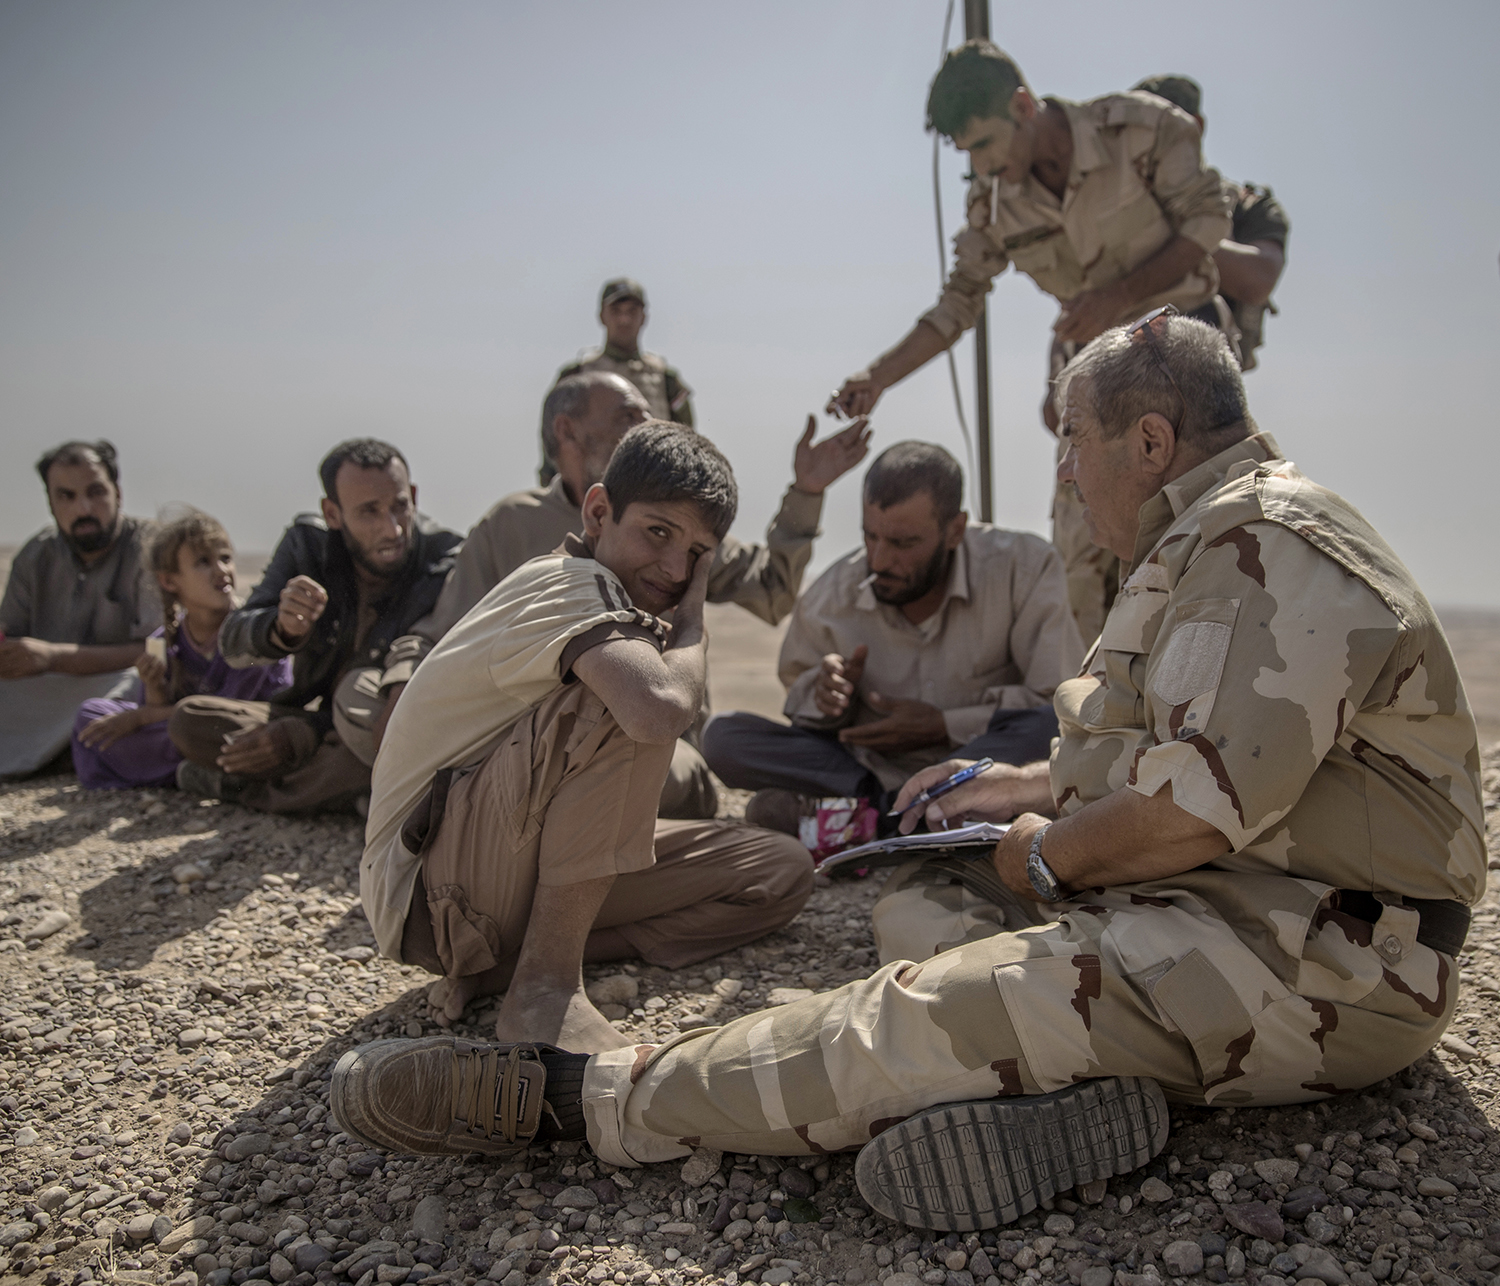 Irak. Fronten mot IS. I bergen utanför Mosul har kurdiska styrkorna, Persmerga sin frontlinje mot IS. 12 män, kvinnor och barn som lyckats fly från en IS kontrollerad by har tagit sig genom öknen och sökt skydd hos de kurdiska styrkorna. De förhörs och kontrolleras noga innan de förs vidare på et lasbilsflak mot ytterligare förhör och senare till Flyktingläger.